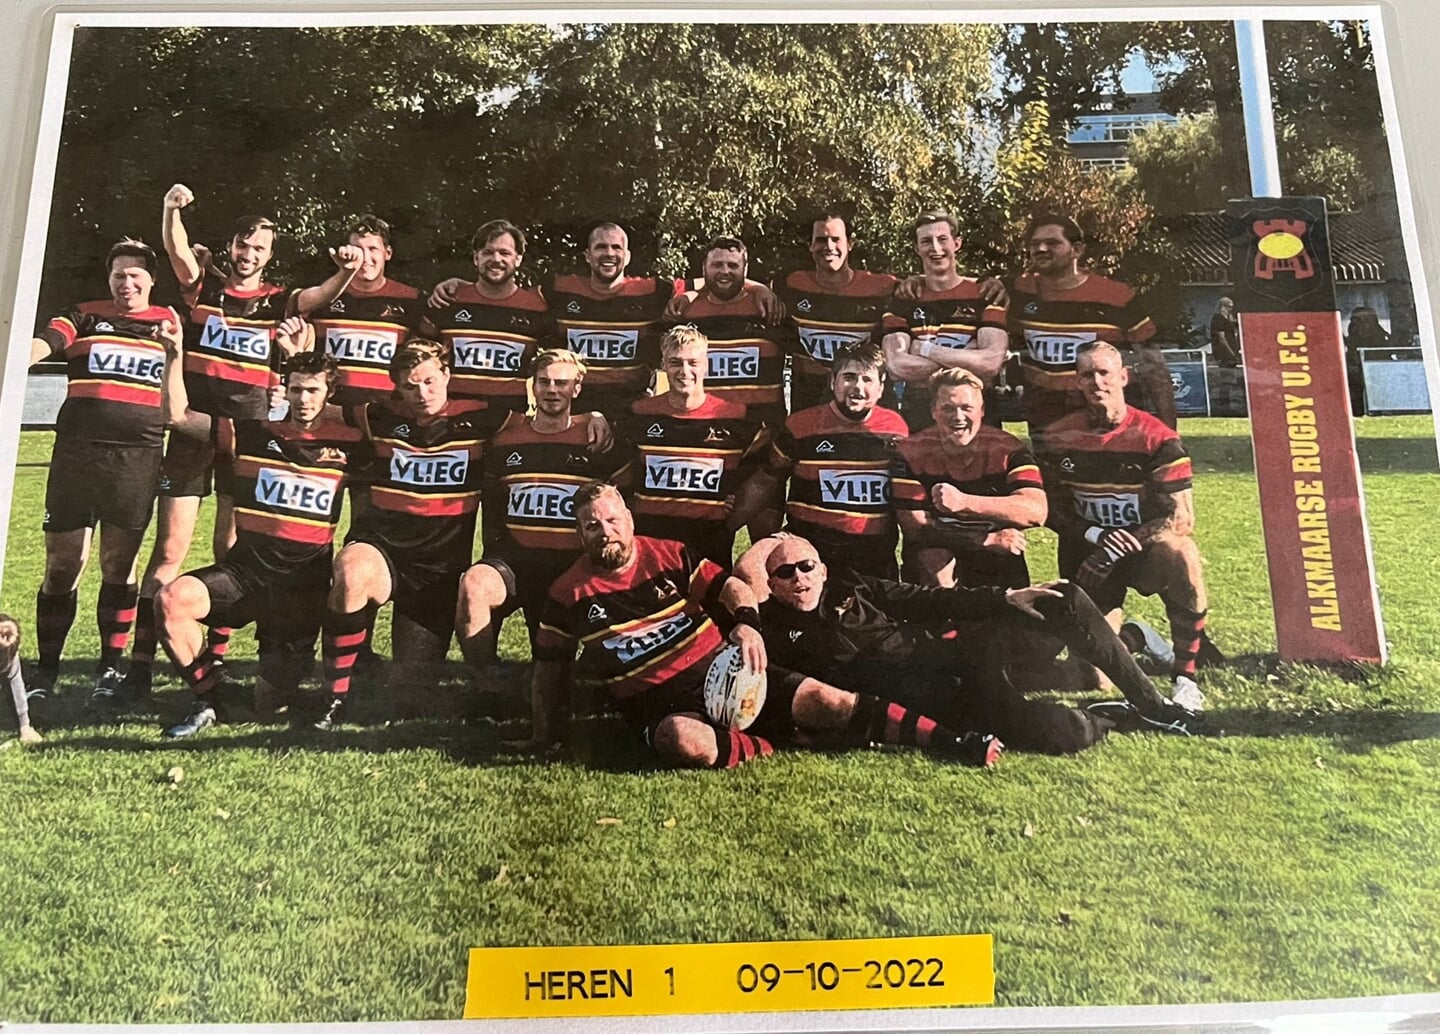 Eerste team Alkmaarse Rugby Club. Rugby wint steeds meer aan terrein in Nederland.